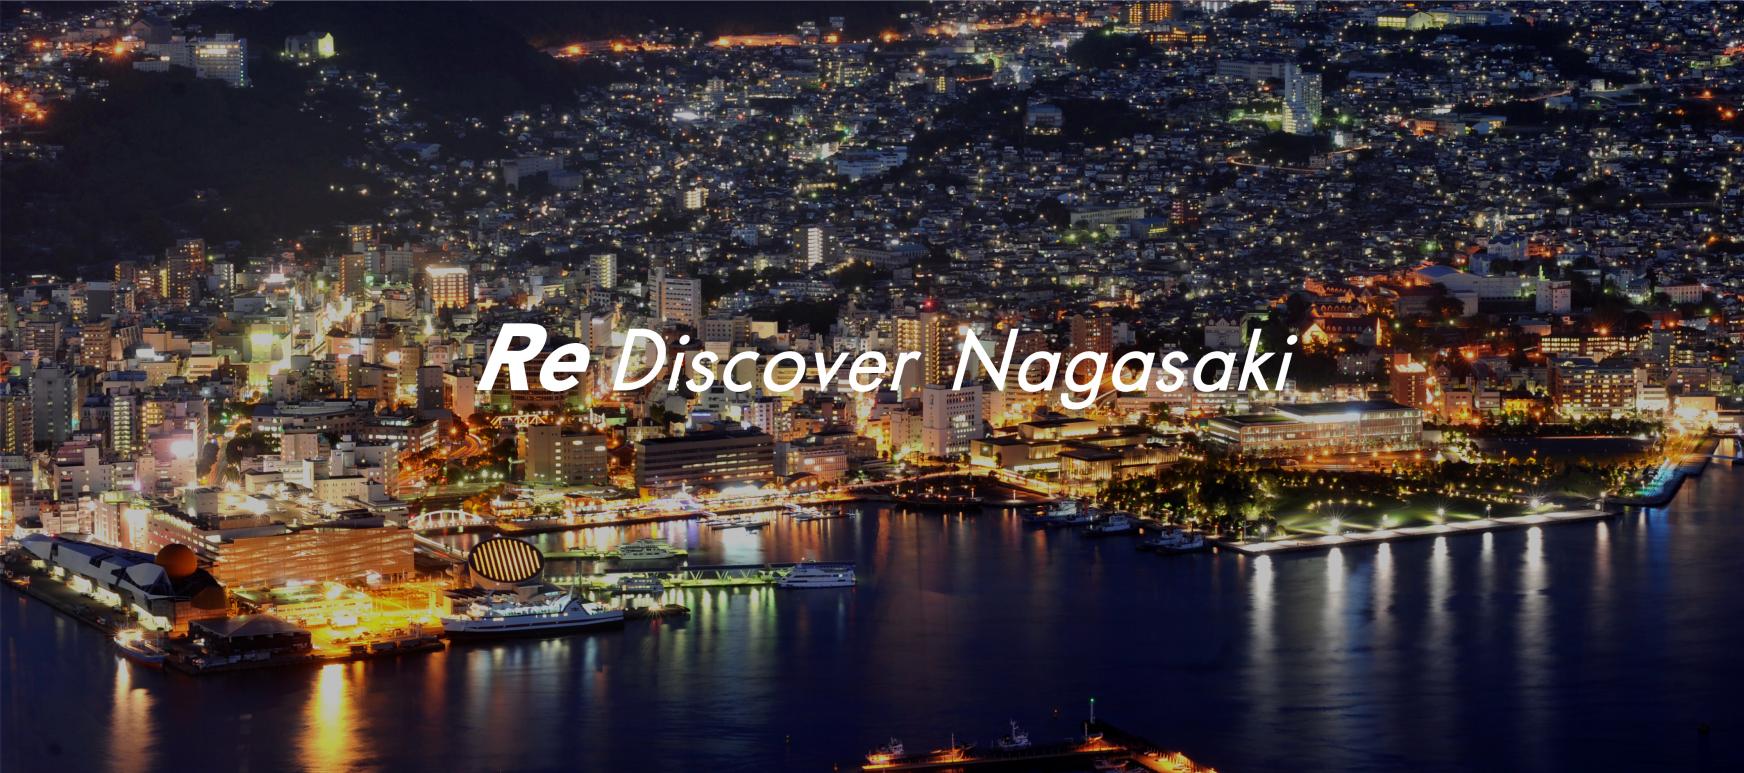 일본을 즐기는 새로운 방법을 확인할 수 있는 '나가사키 여행'-1